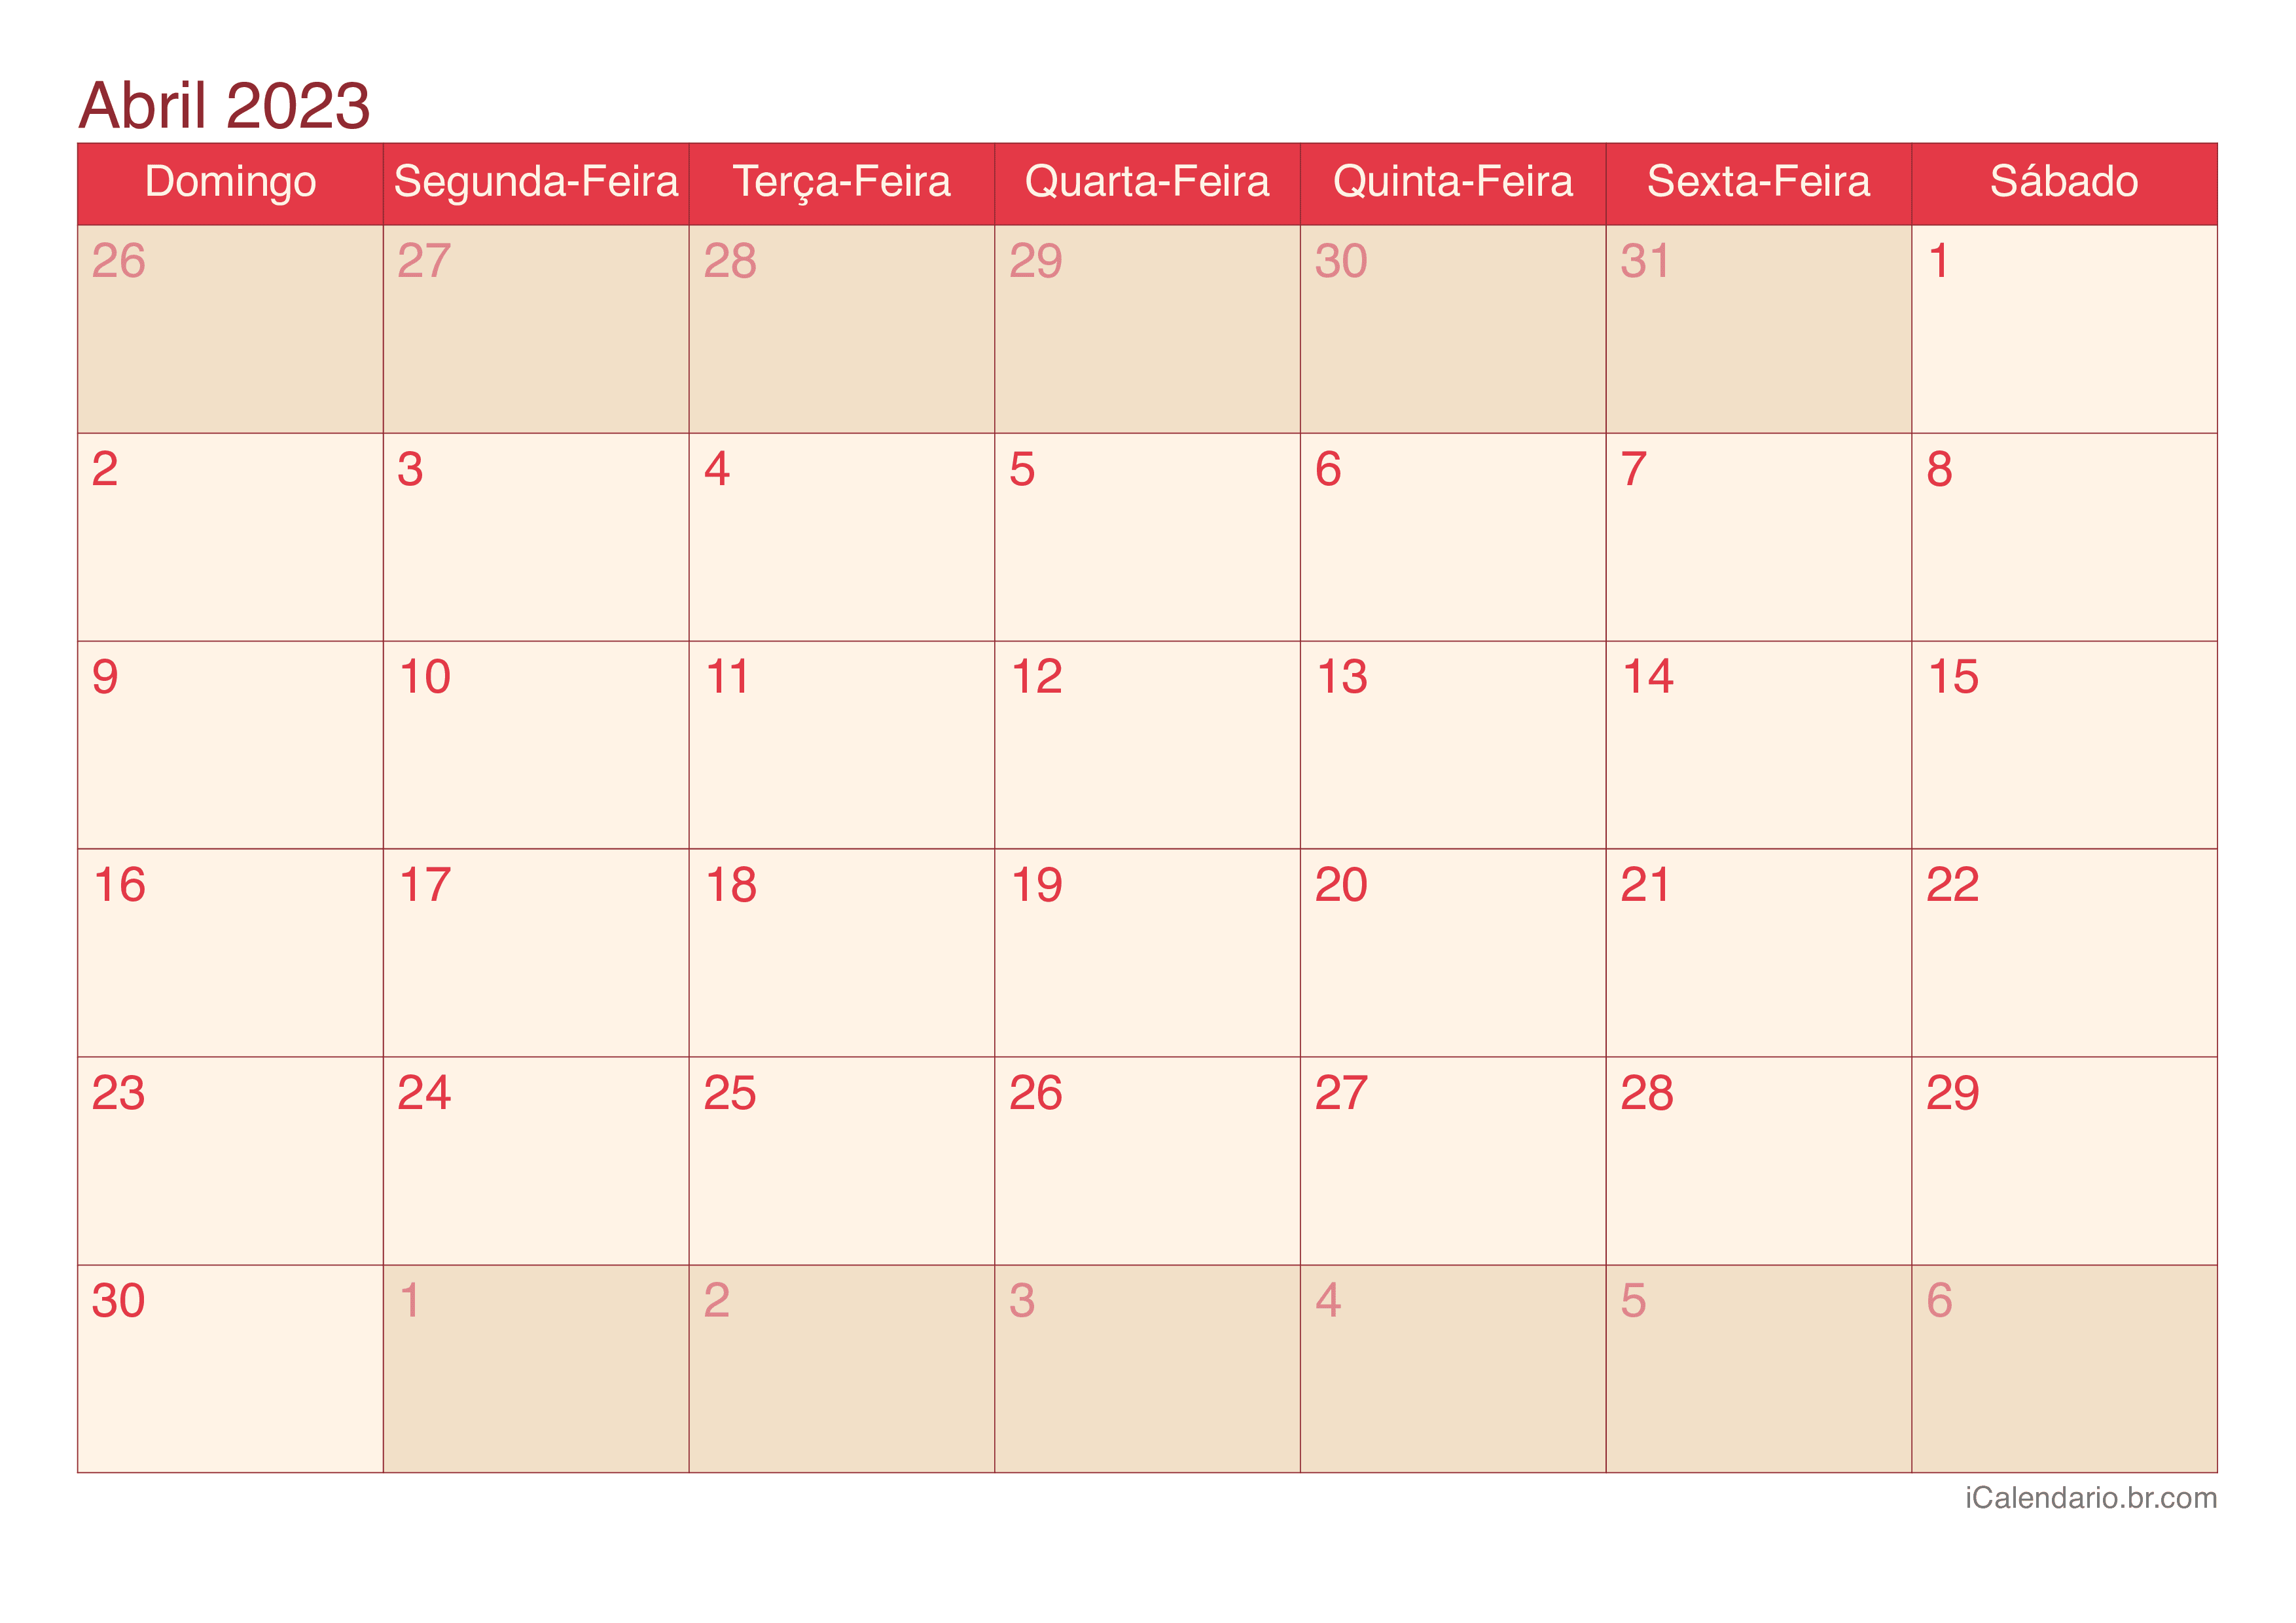 Calendário de abril 2023 - Cherry